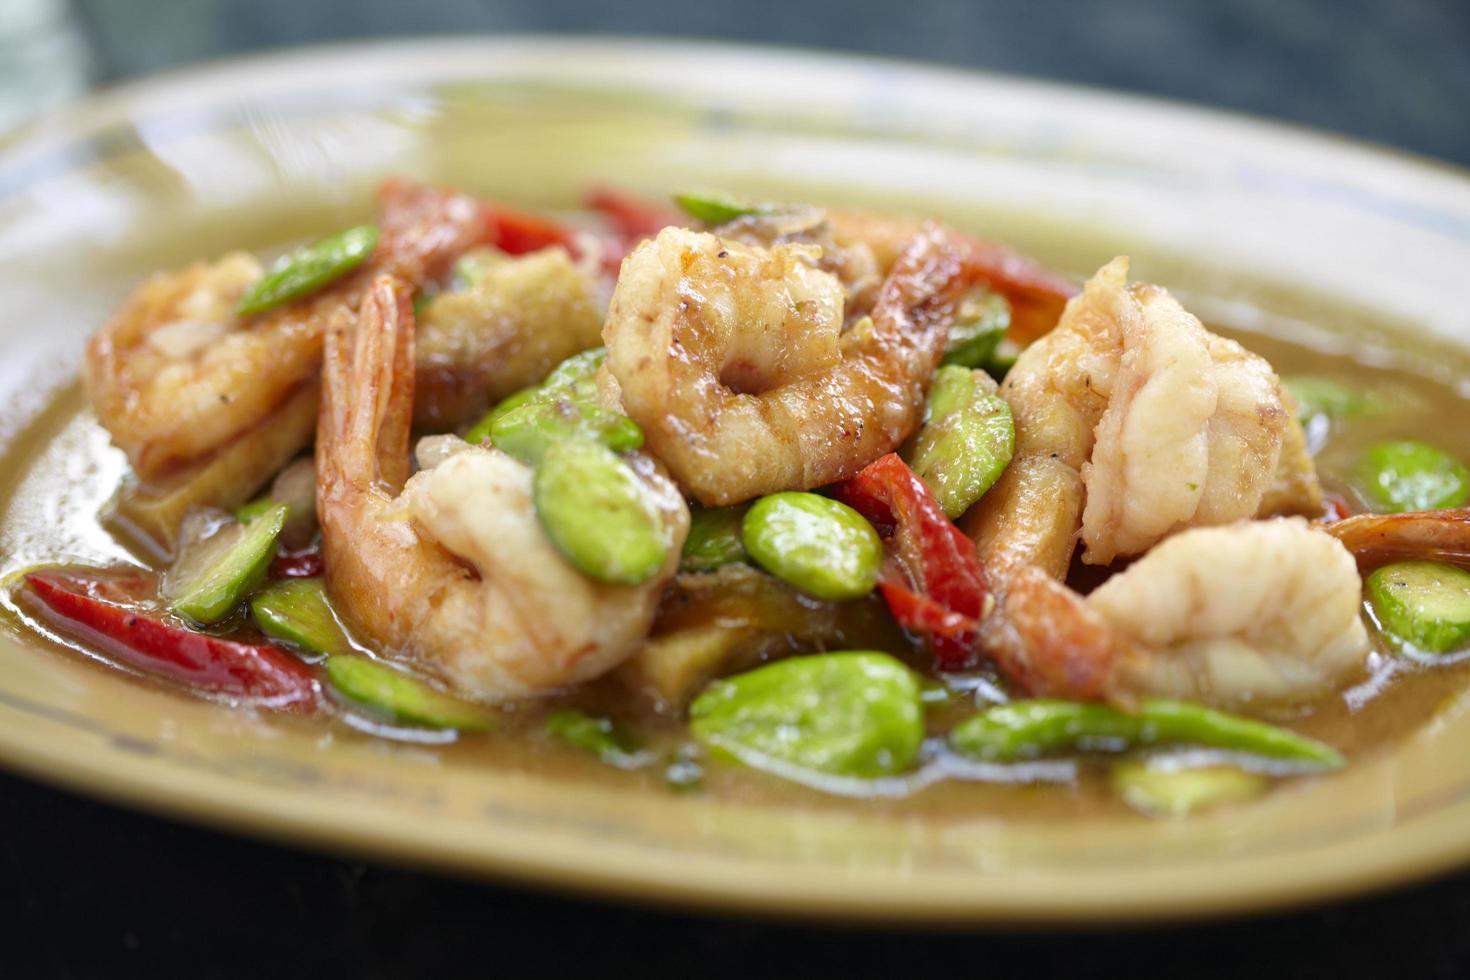 crevettes épicées et haricots verts dans la cuisine thaïlandaise photo